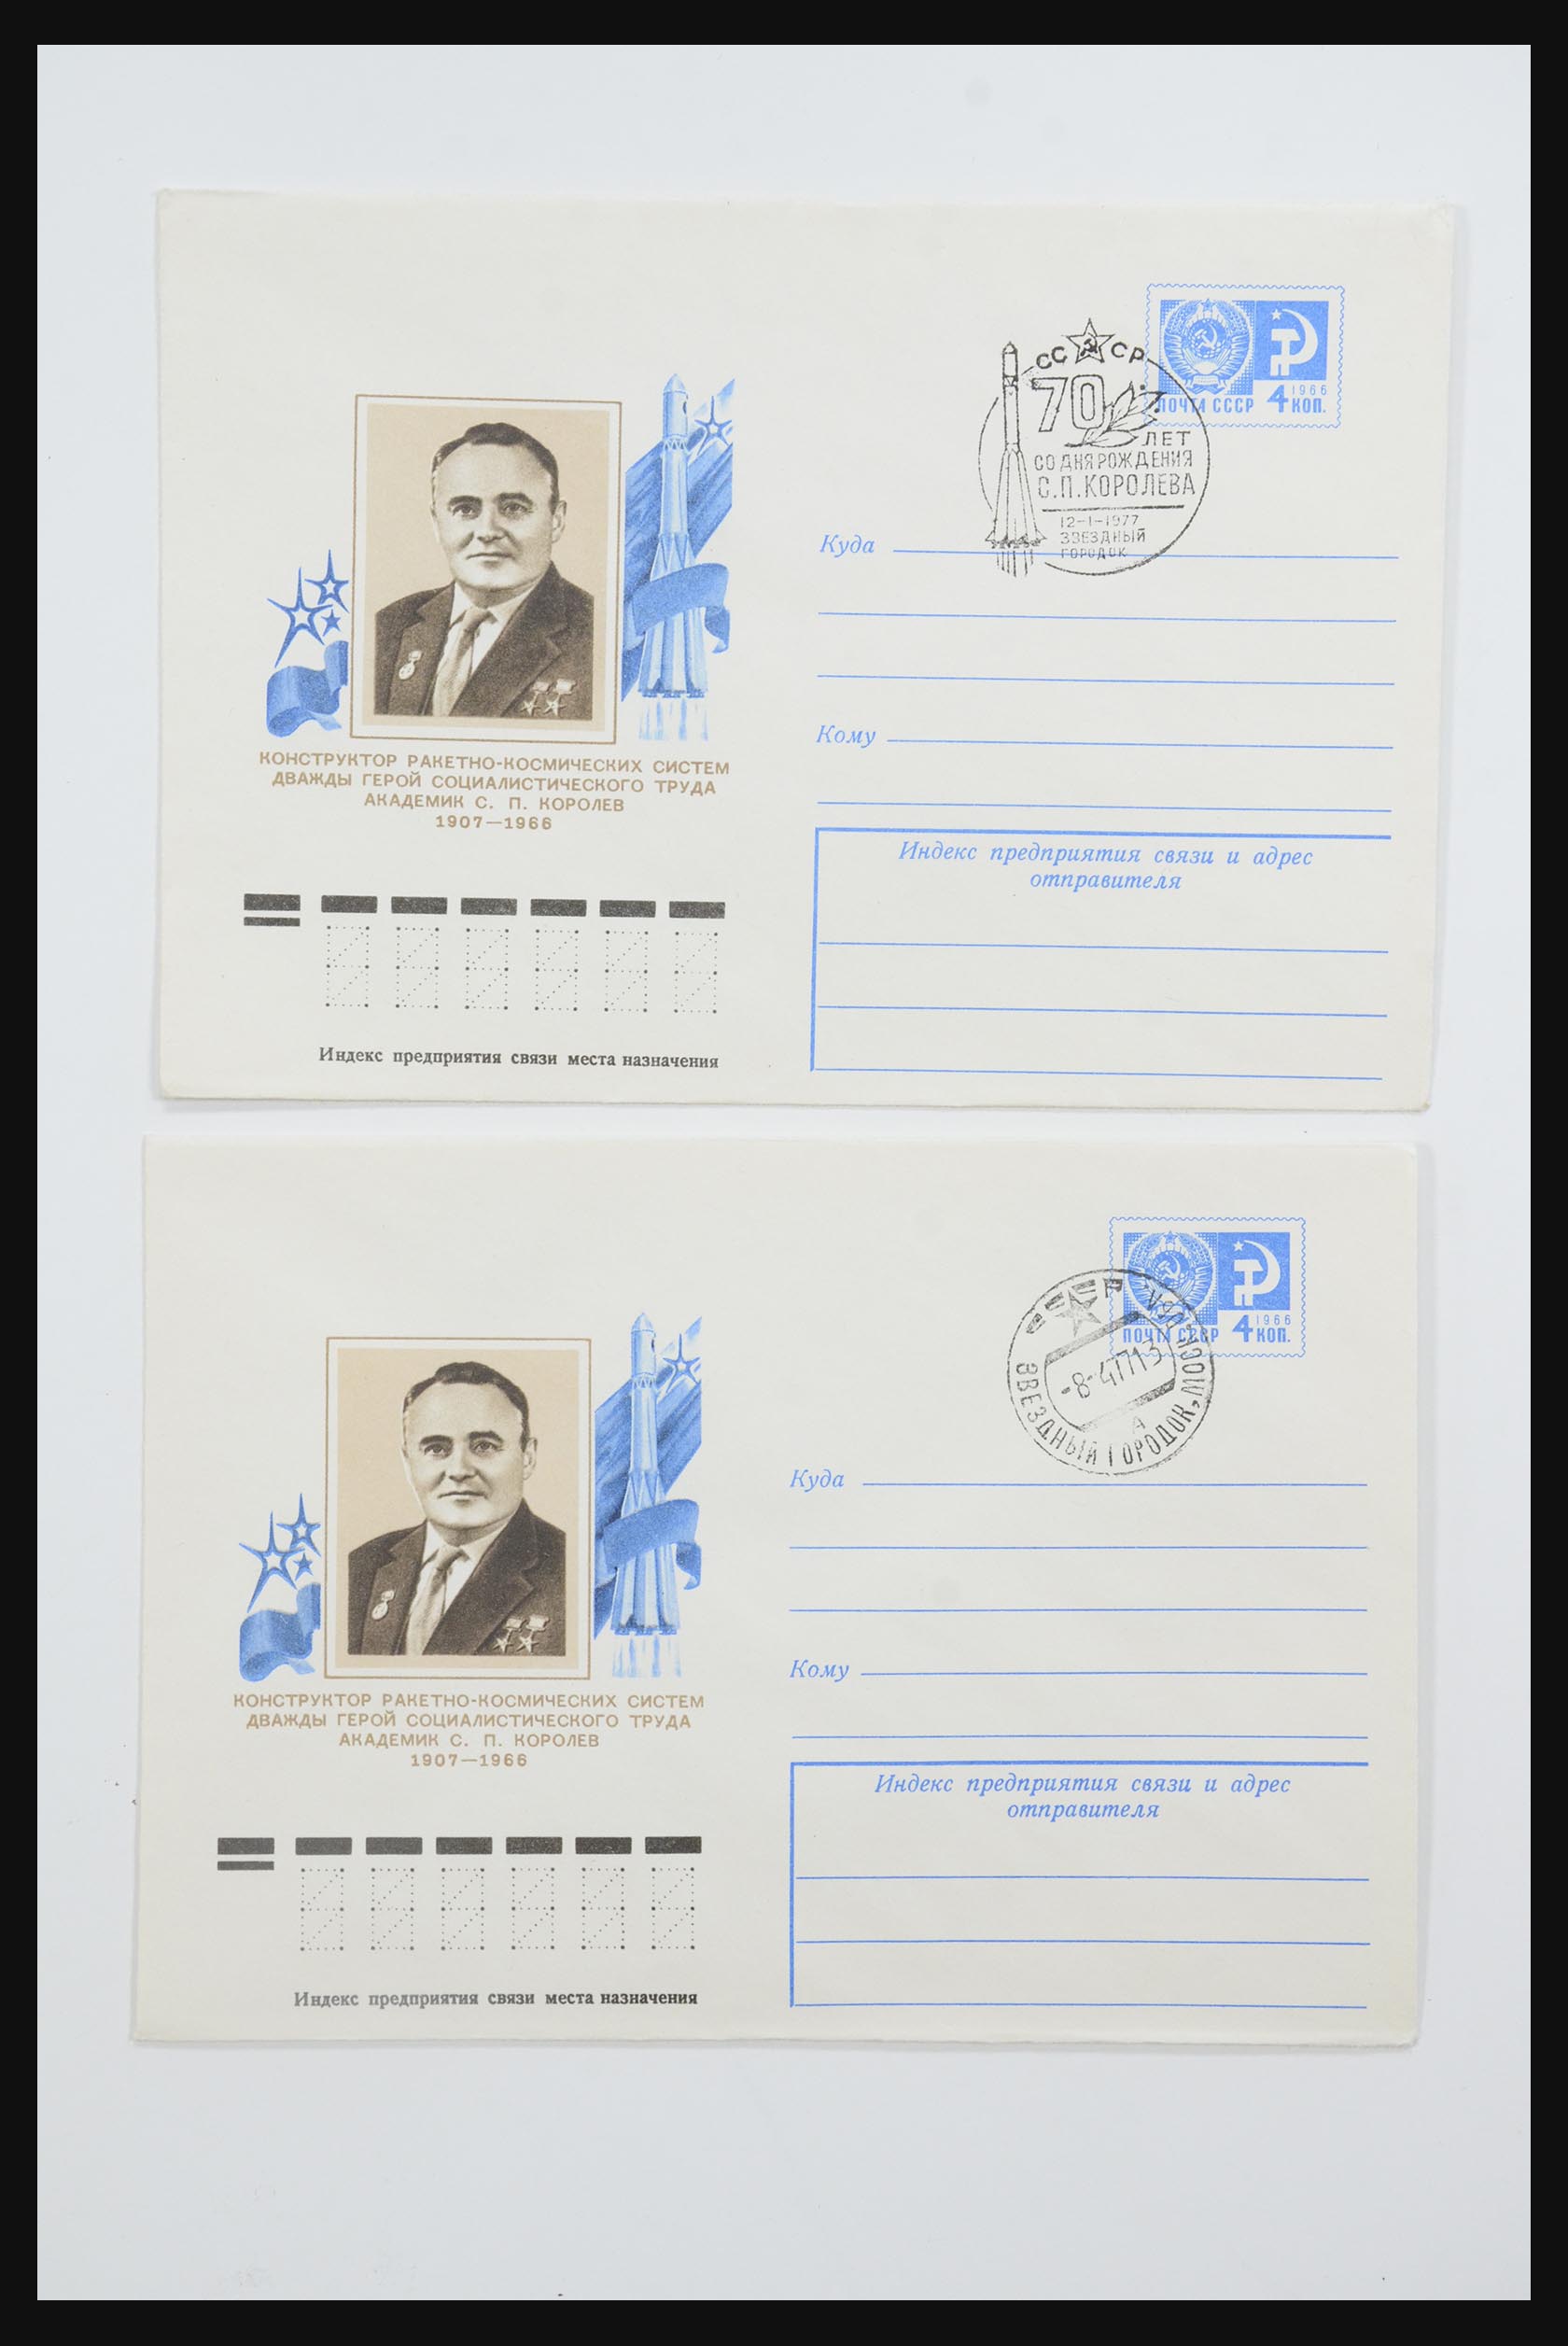 31605 0015 - 31605 Rusland postwaardestukken jaren 50-60.